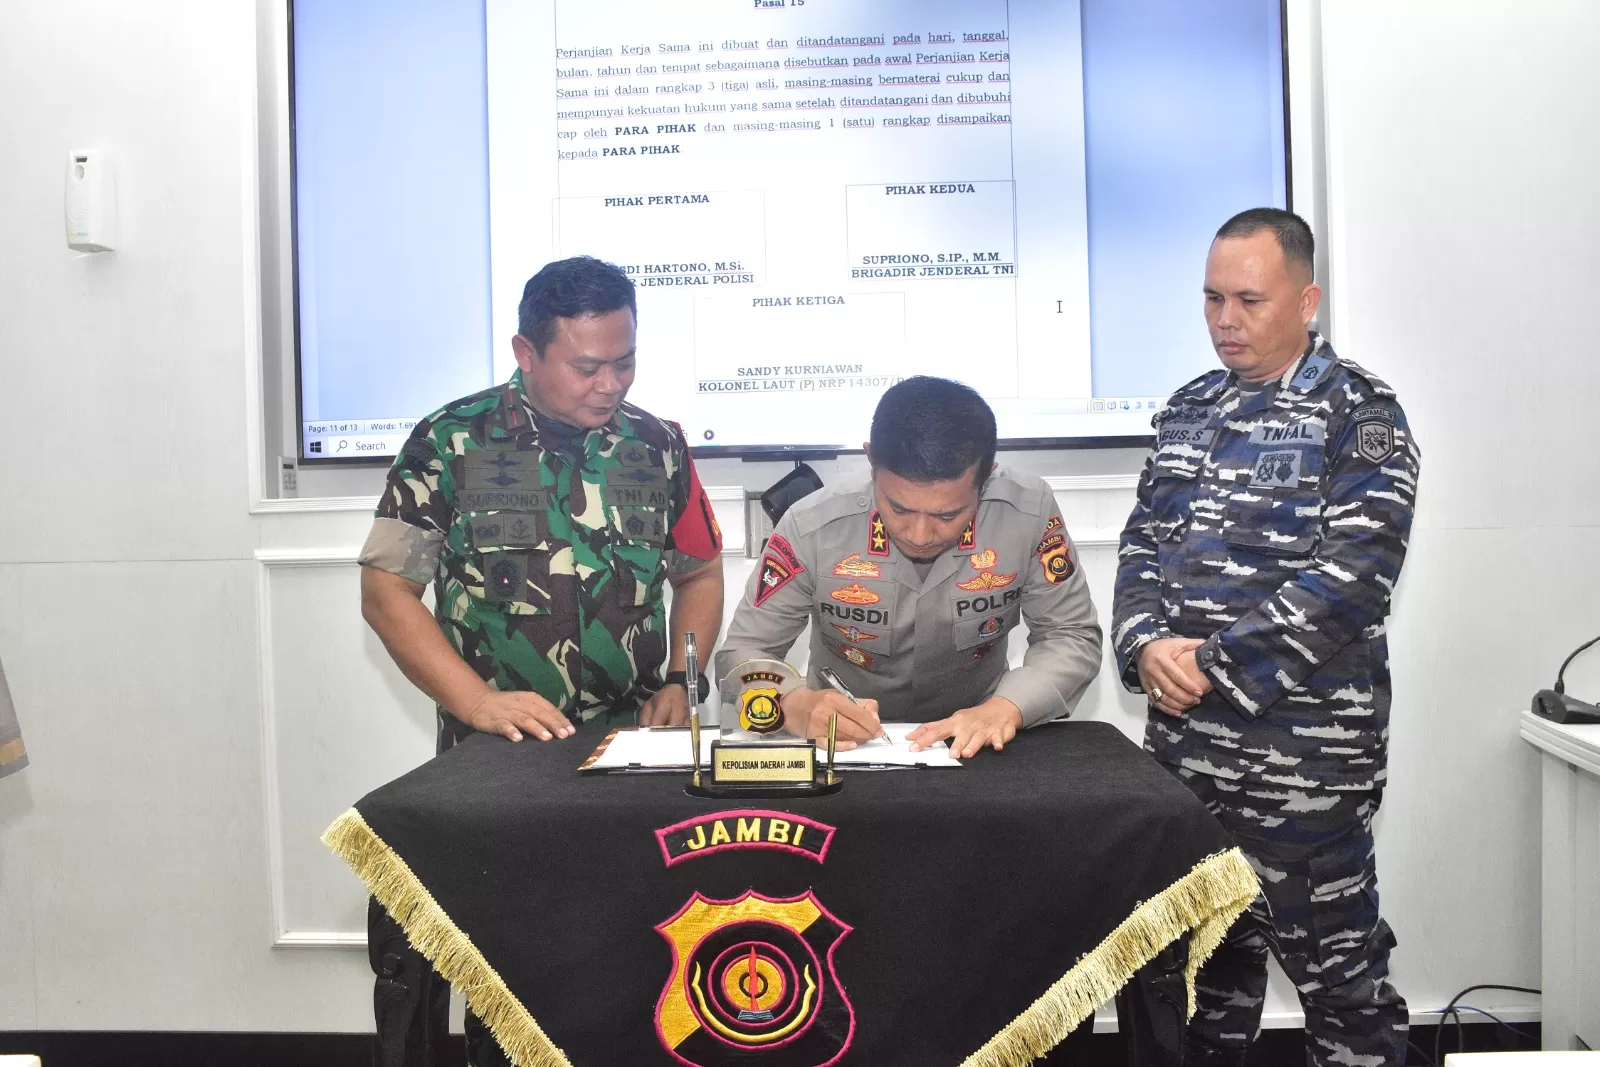 Polda Jambi Jalin Kerjasama dengan Korem 042 Gapu dan Pangkalan TNI AL Palembang Demi Perkuat Sinergitas